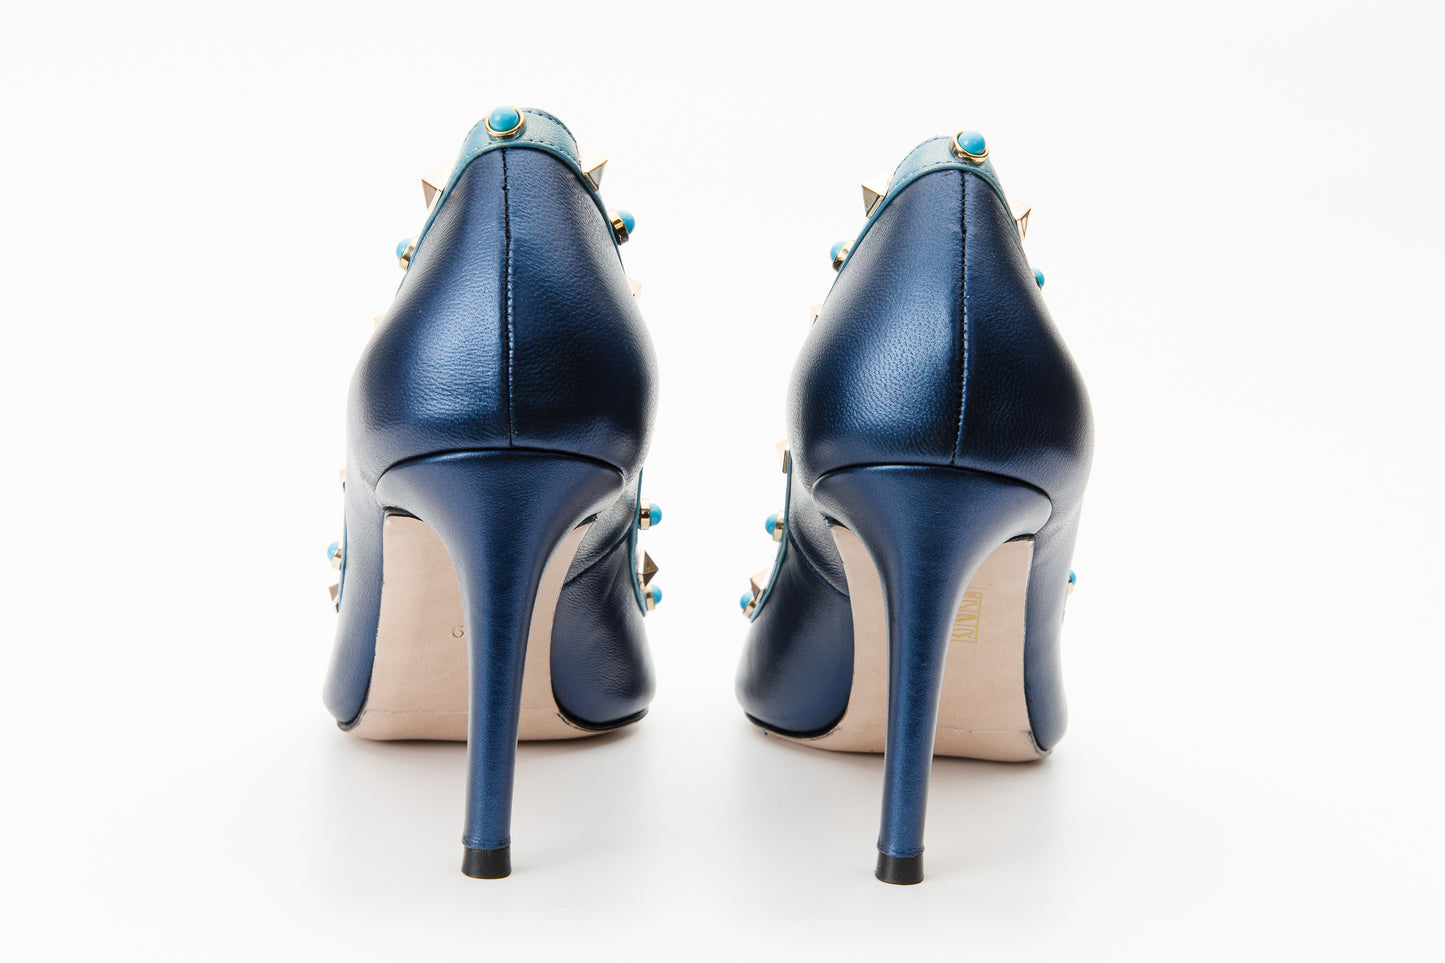 The Tikapur Blue Leather Pump Women Shoe